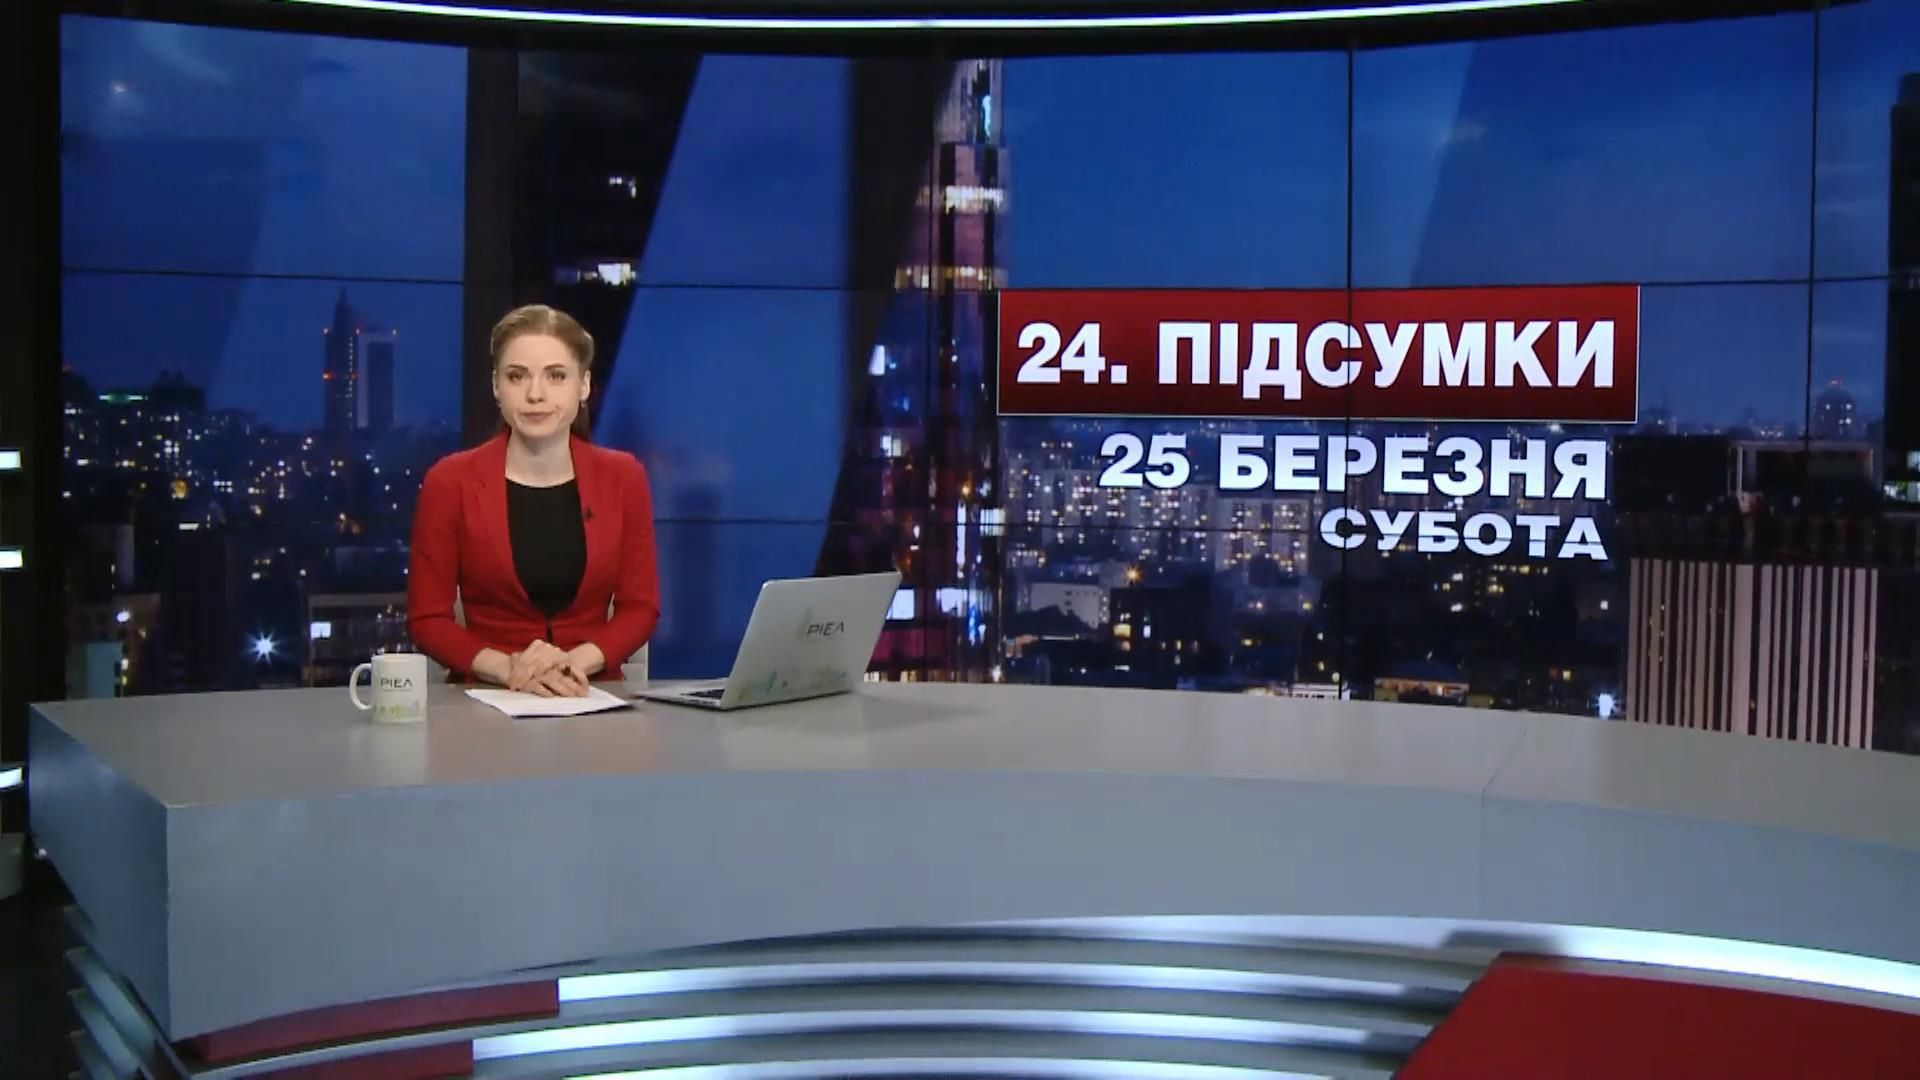 Підсумковий випуск новин за 21:00: Жертви у зоні АТО. Масові затримання у Білорусі